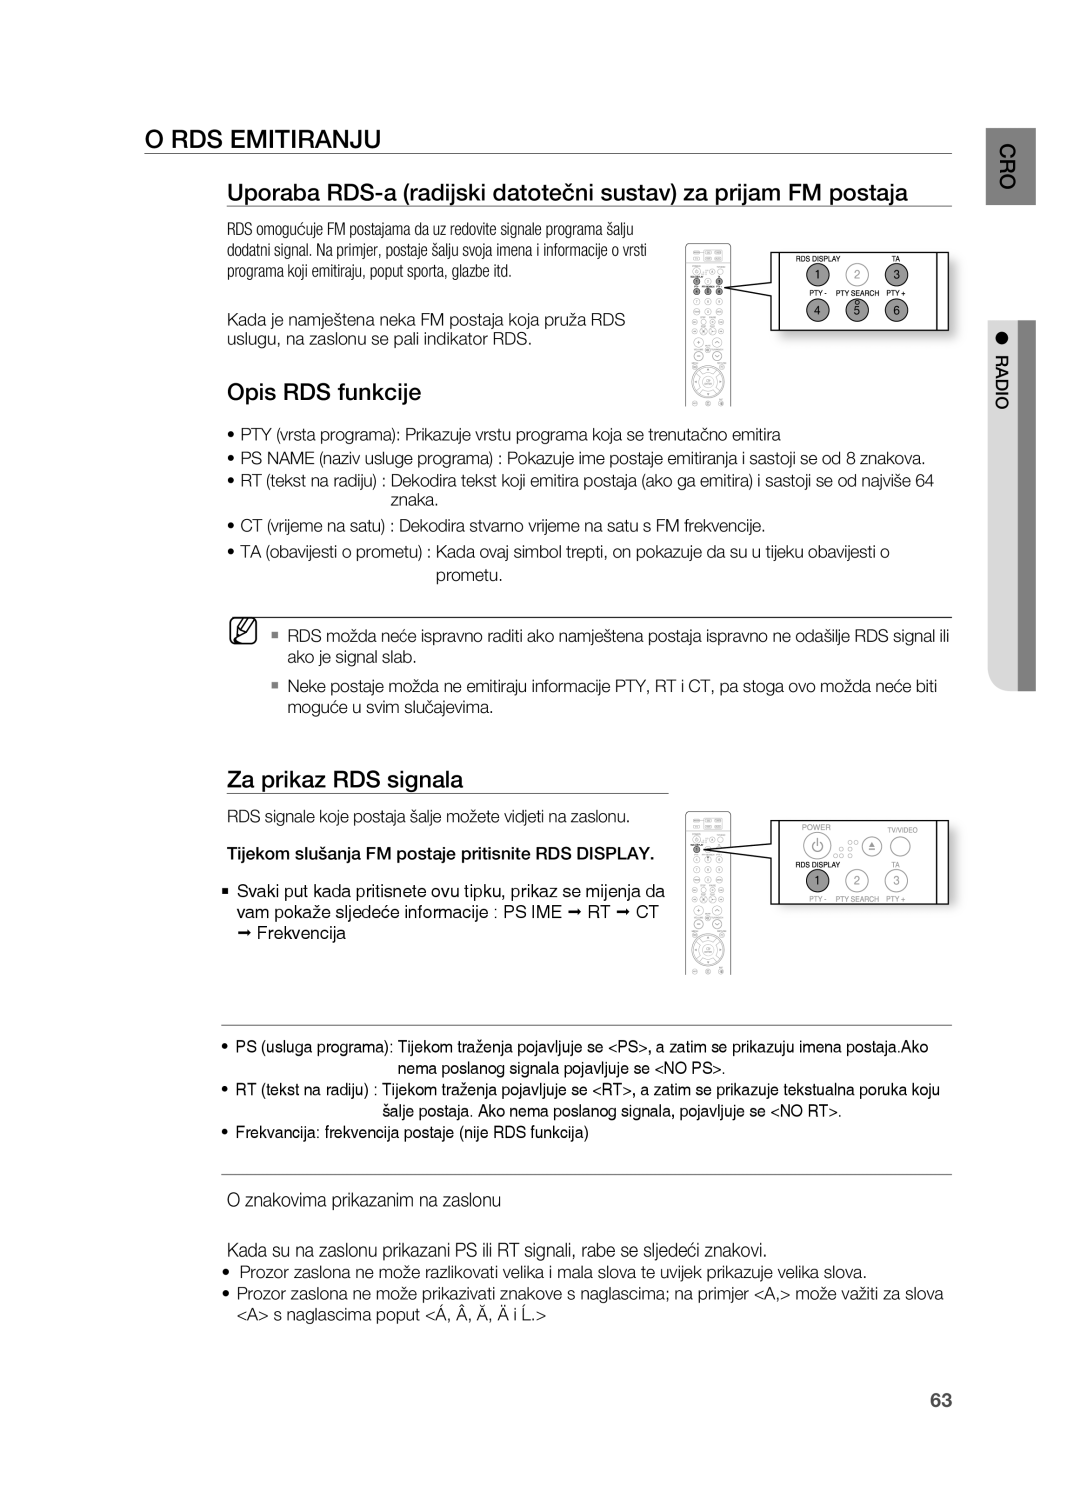 Samsung HT-TZ215R/EDC o RDS EMITIRANjU, Uporaba RDS-a radijski datotečni sustav za prijam FM postaja, opis RDS funkcije 